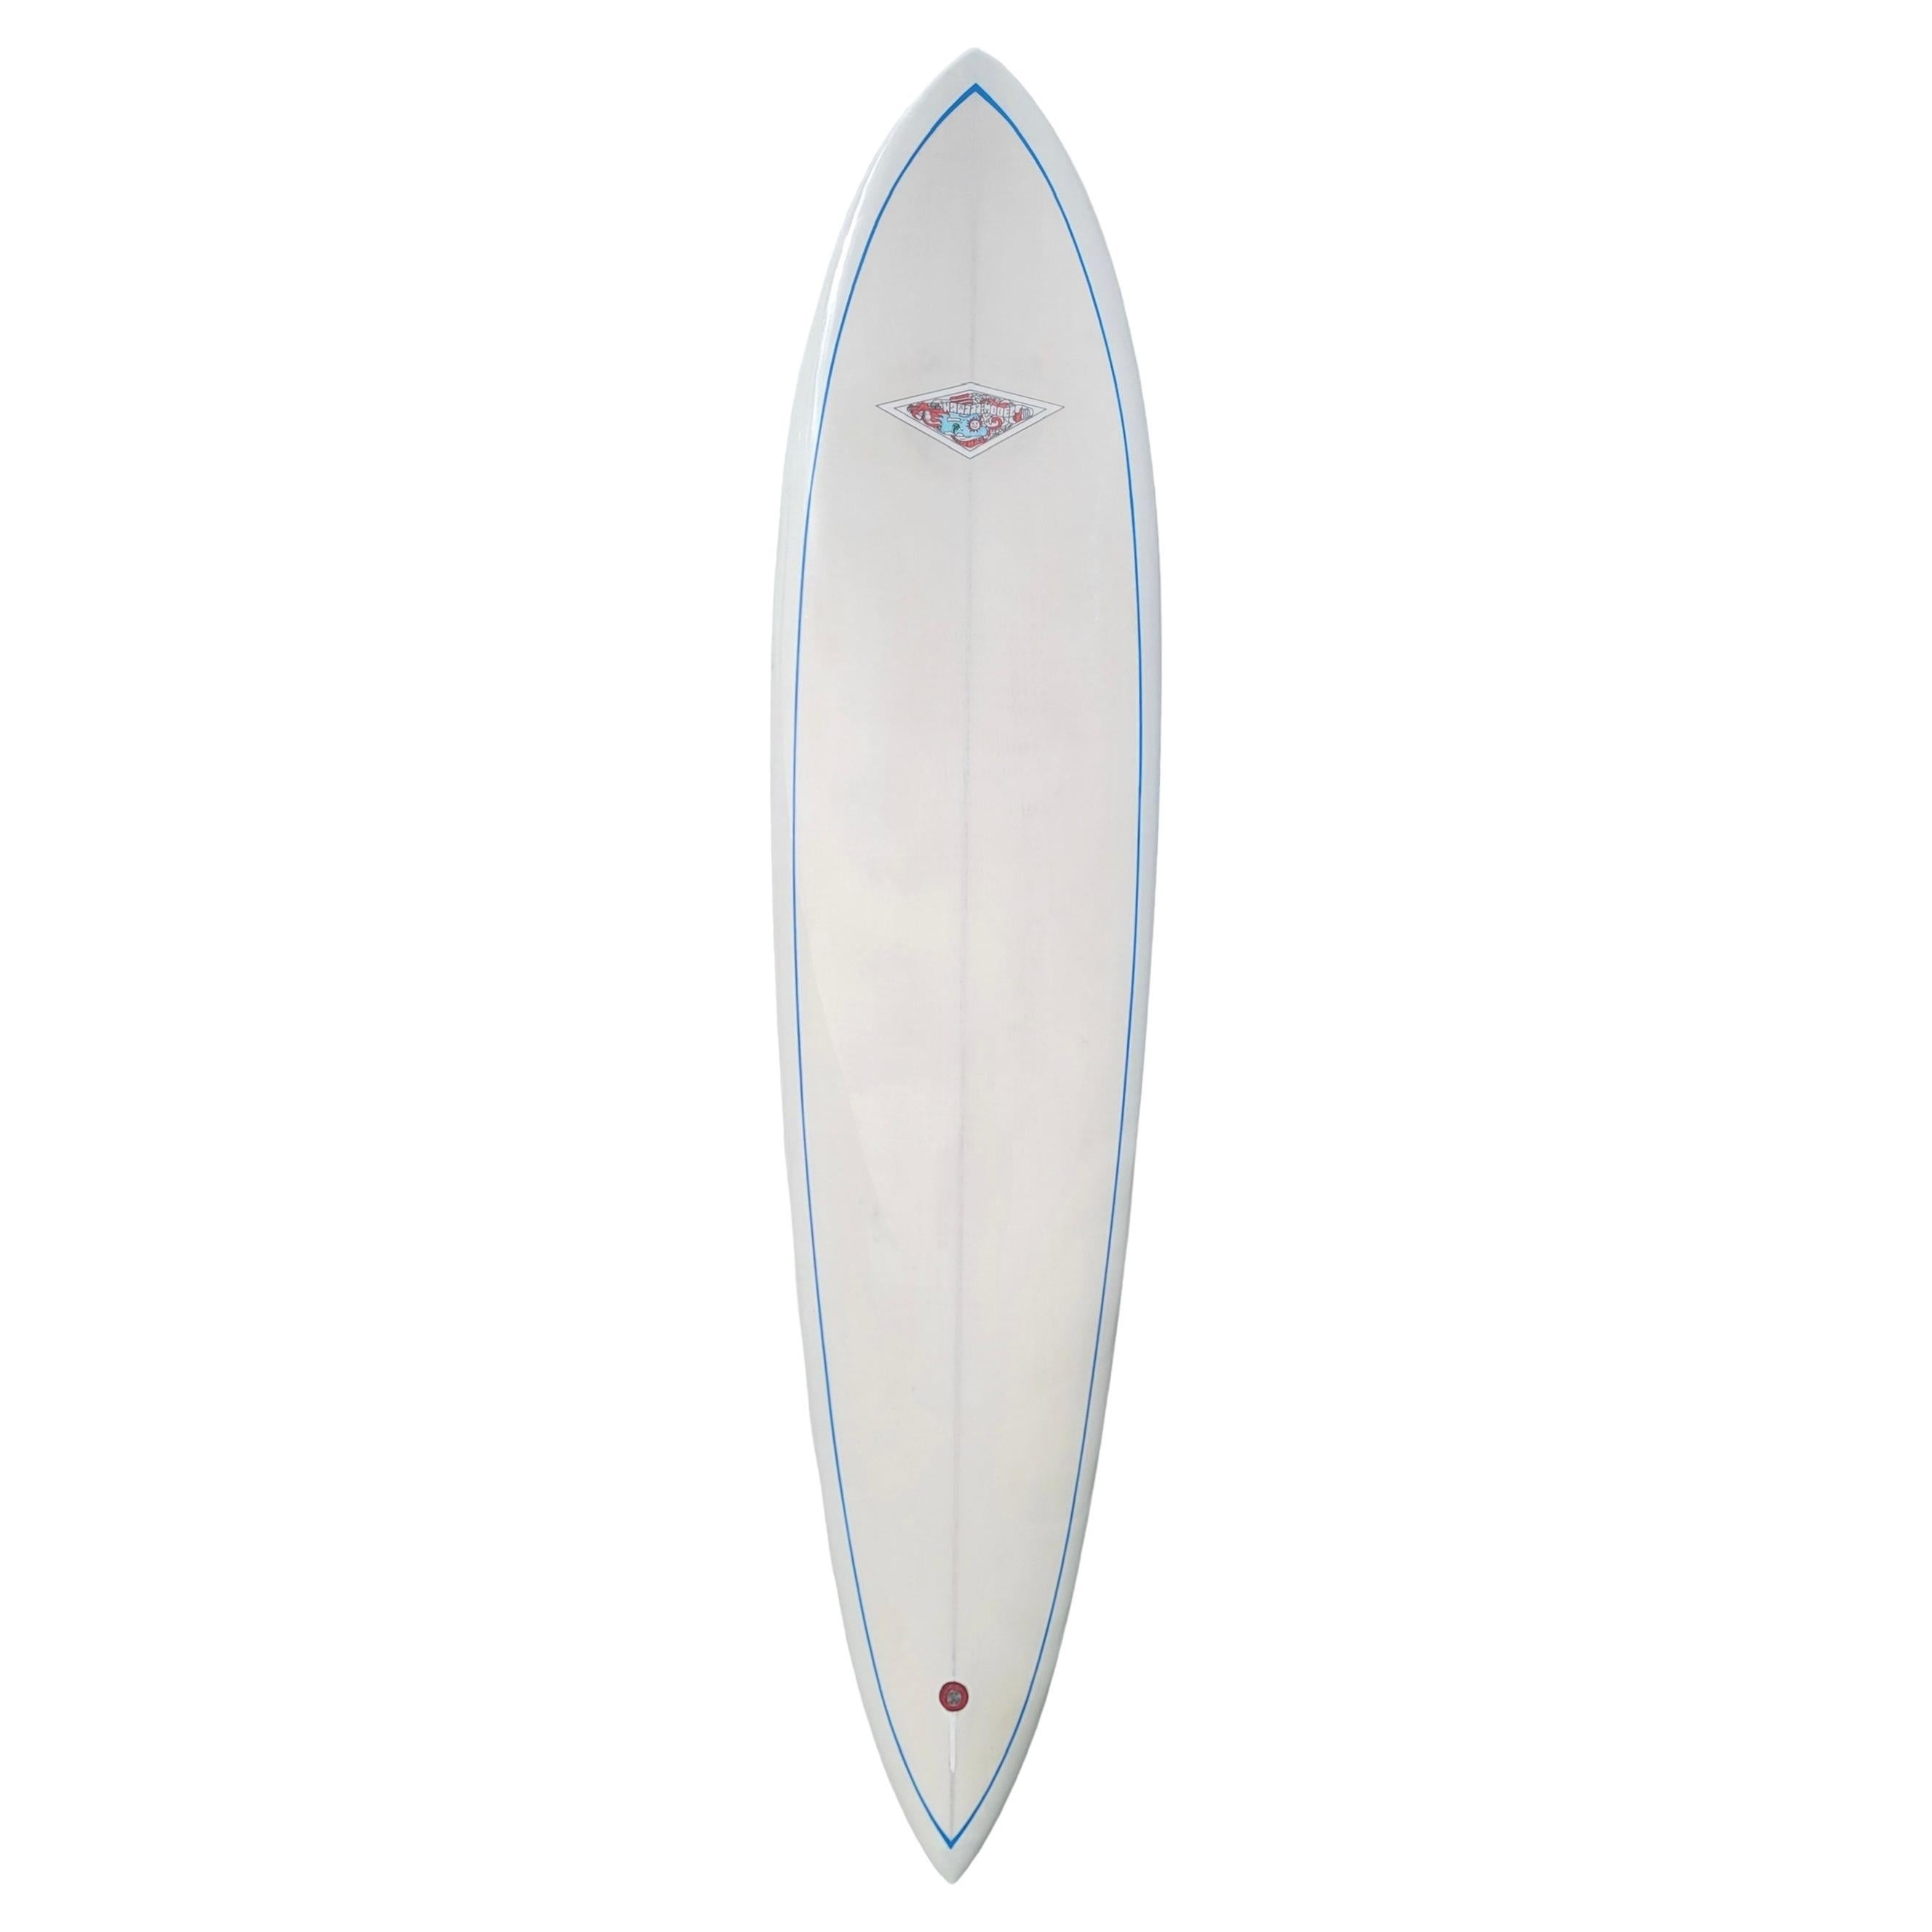 1967 Vintage Hobie Hawaii model Pintail Surfboard